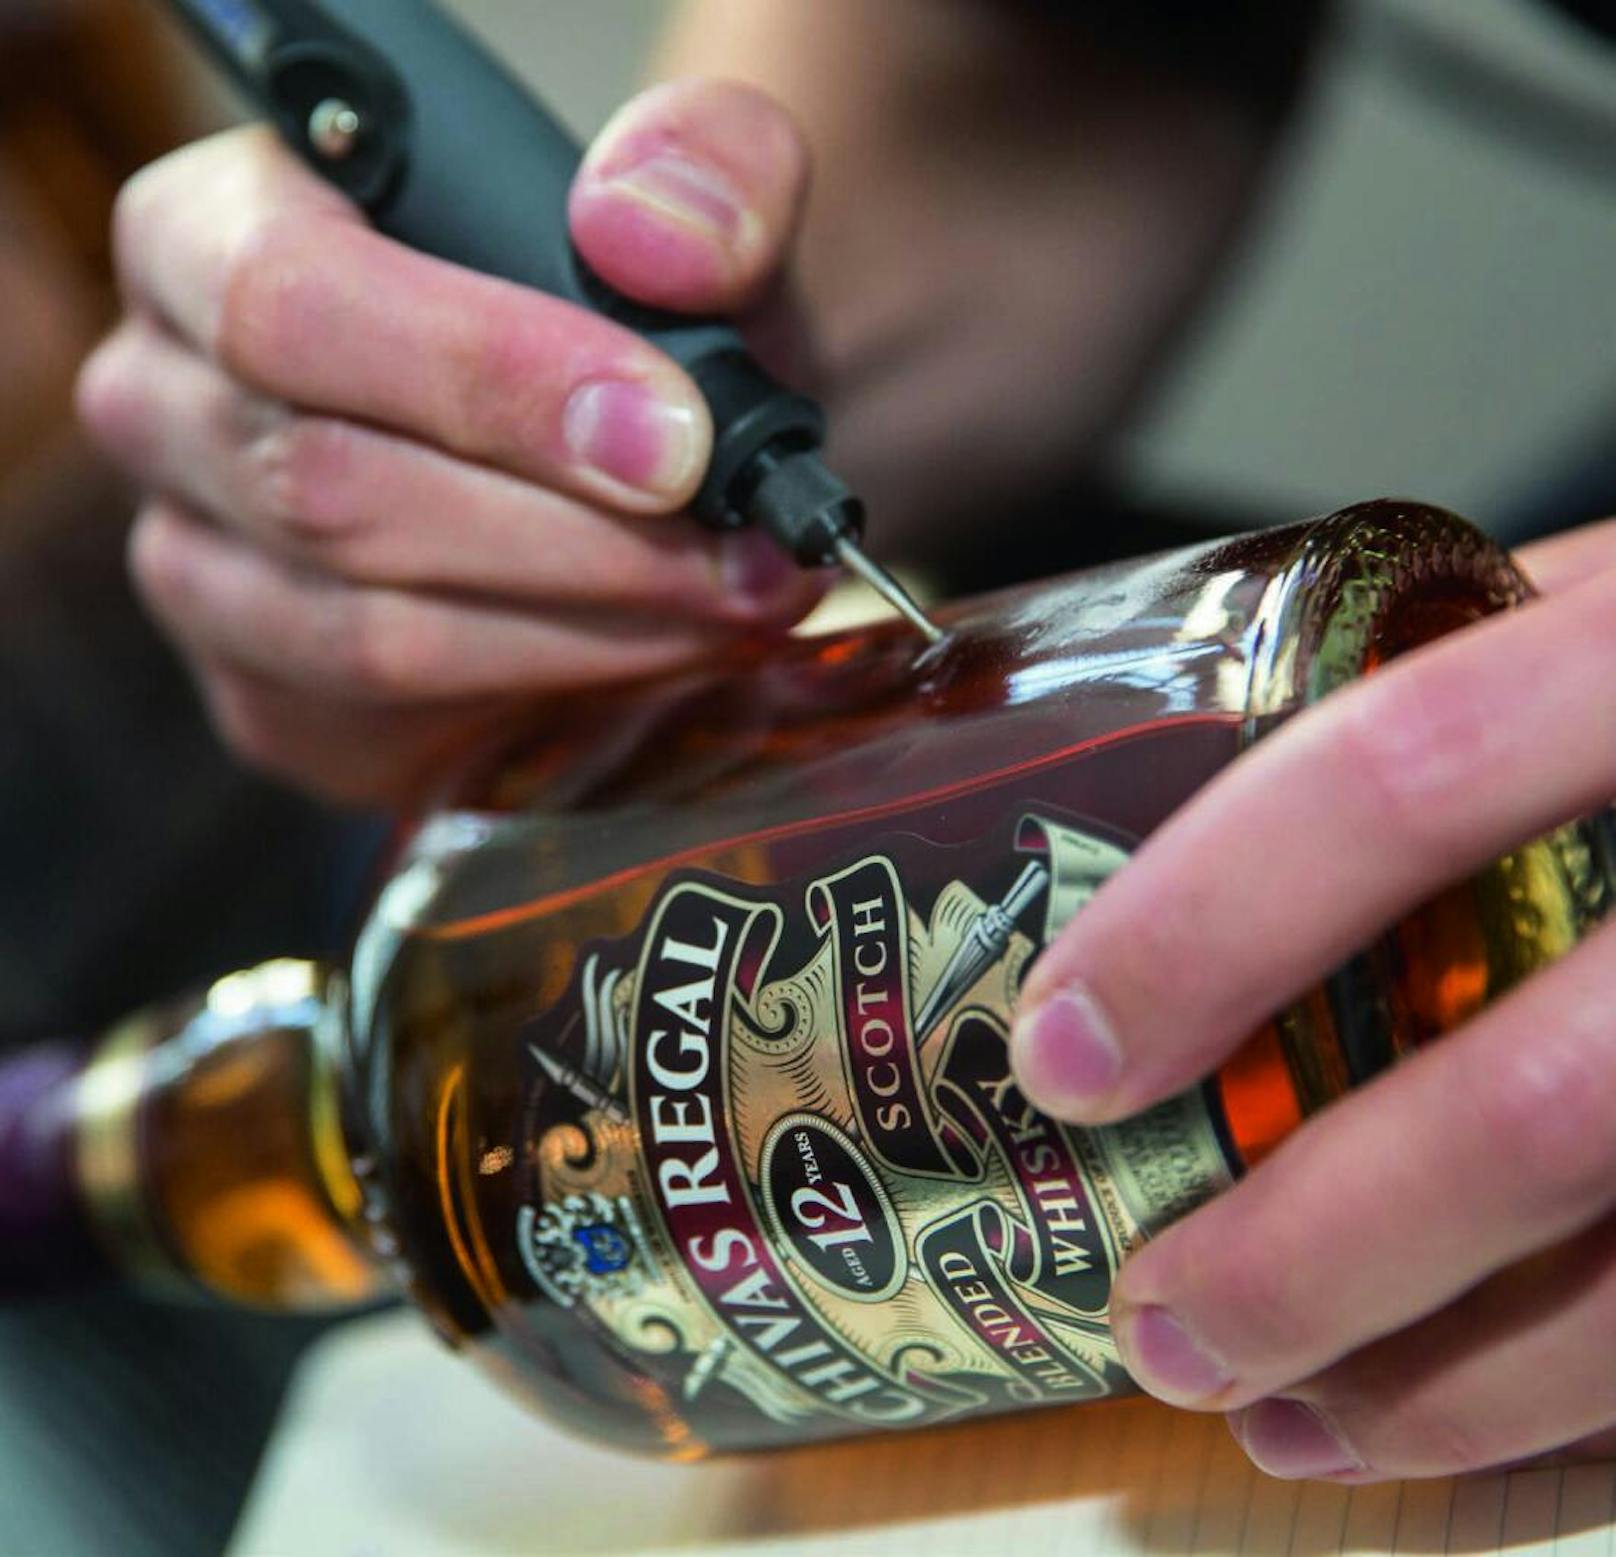 Der schottische Premium-Whisky <b>ChivasRegal </b>bietet am 08. Juni bei Merkur Gerngross und am 09. Juni bei Interspar im Donauzentrum einen <b>persönlichen Gravur-Service</b> an - so kann dem majestätischen" Chivas Regal eine individuelle Nachricht für den lieben Papa eingraviert werden. Die Flasche gibt es <b>ab rund 23 Euro, die Gravur gibt's gratis dazu</b>!